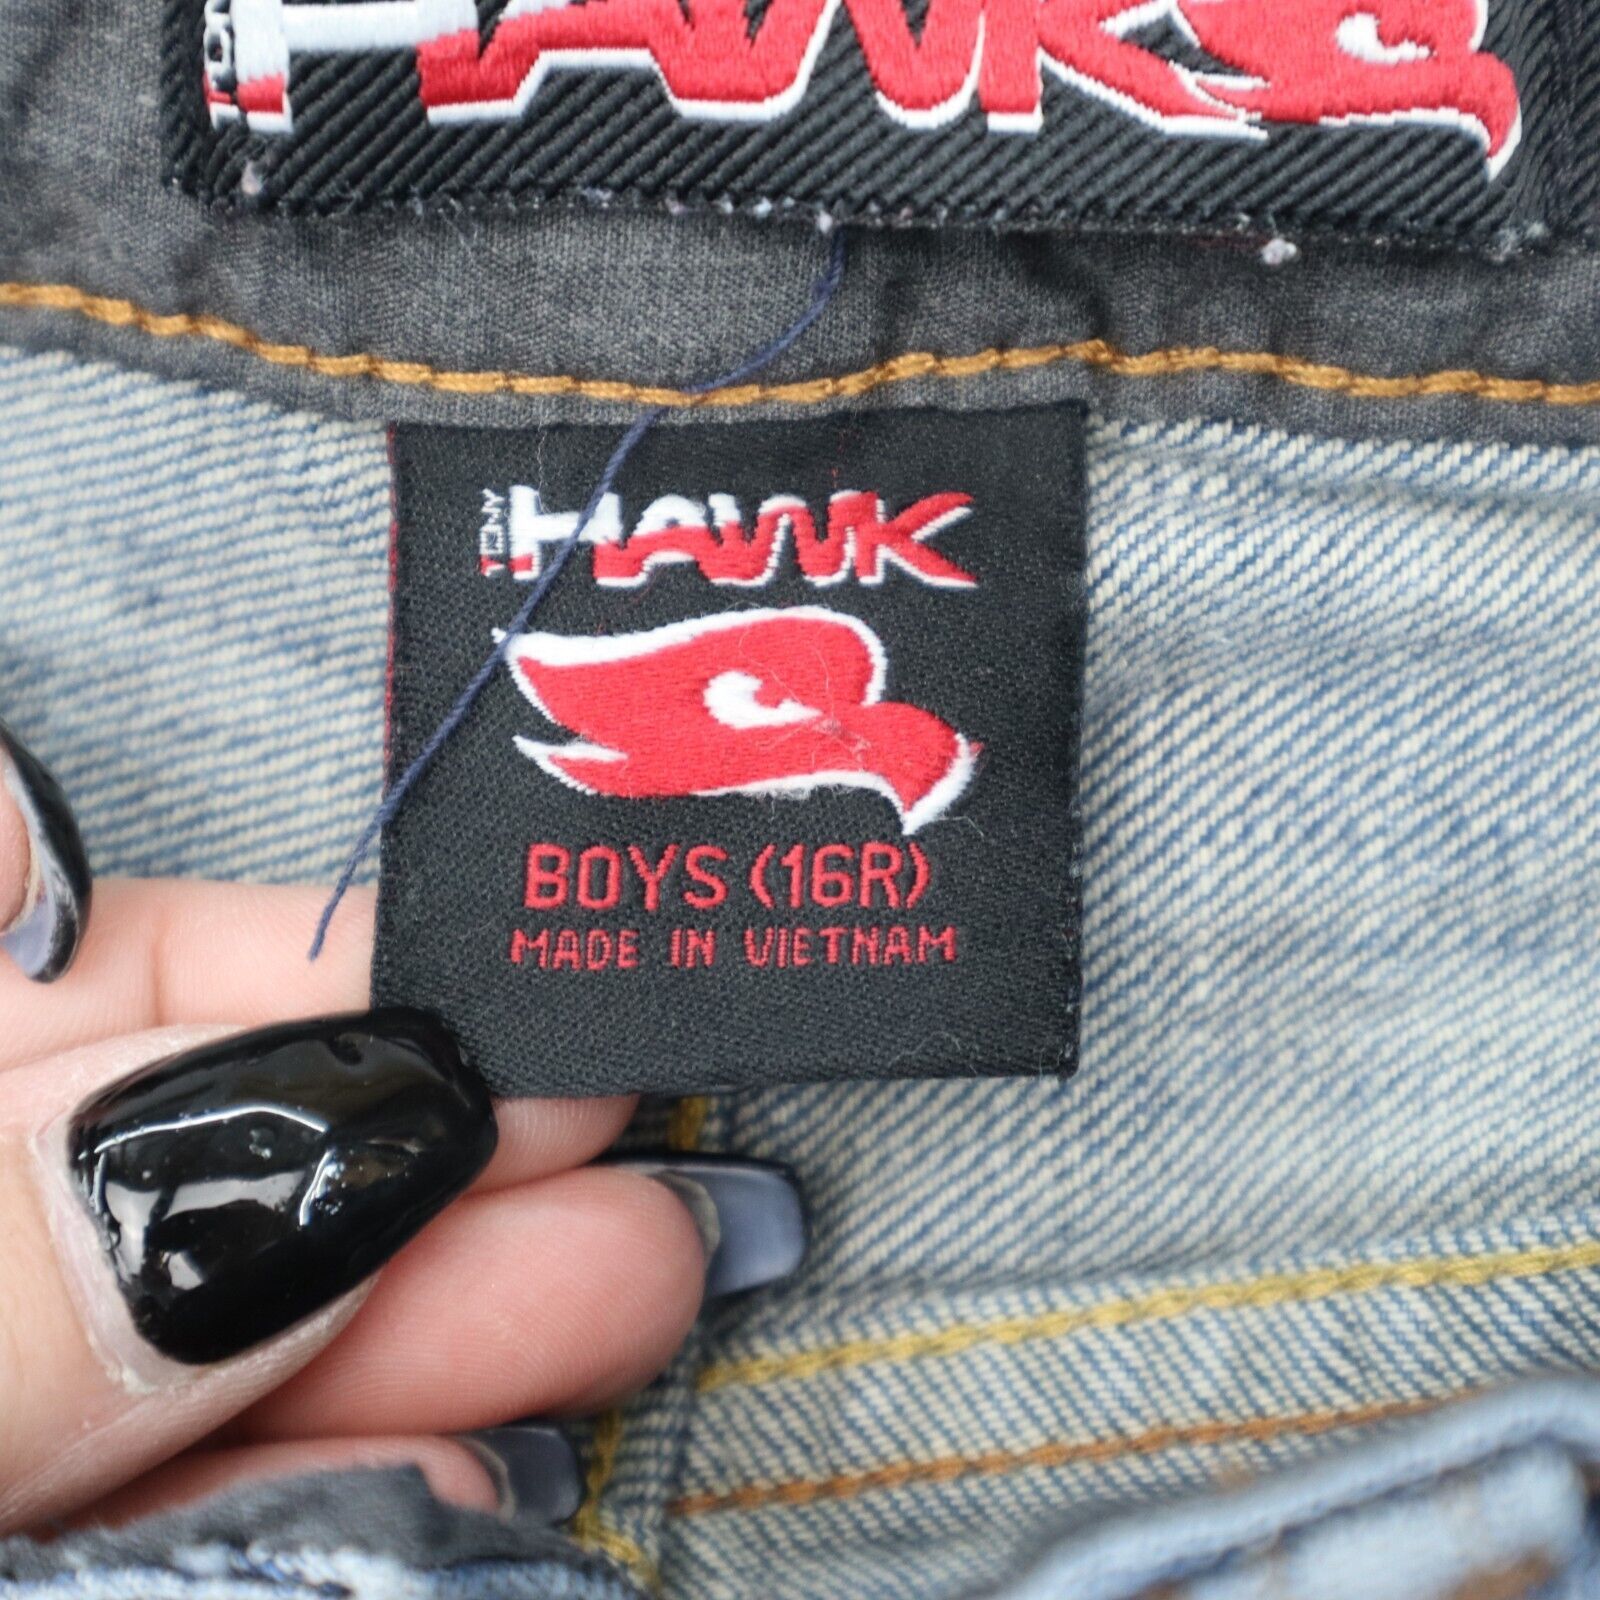 Primary image for Hawk Pants Boys 16R Blue Flat Front Slim Fit 5 Pocket Design Jeans Bottoms